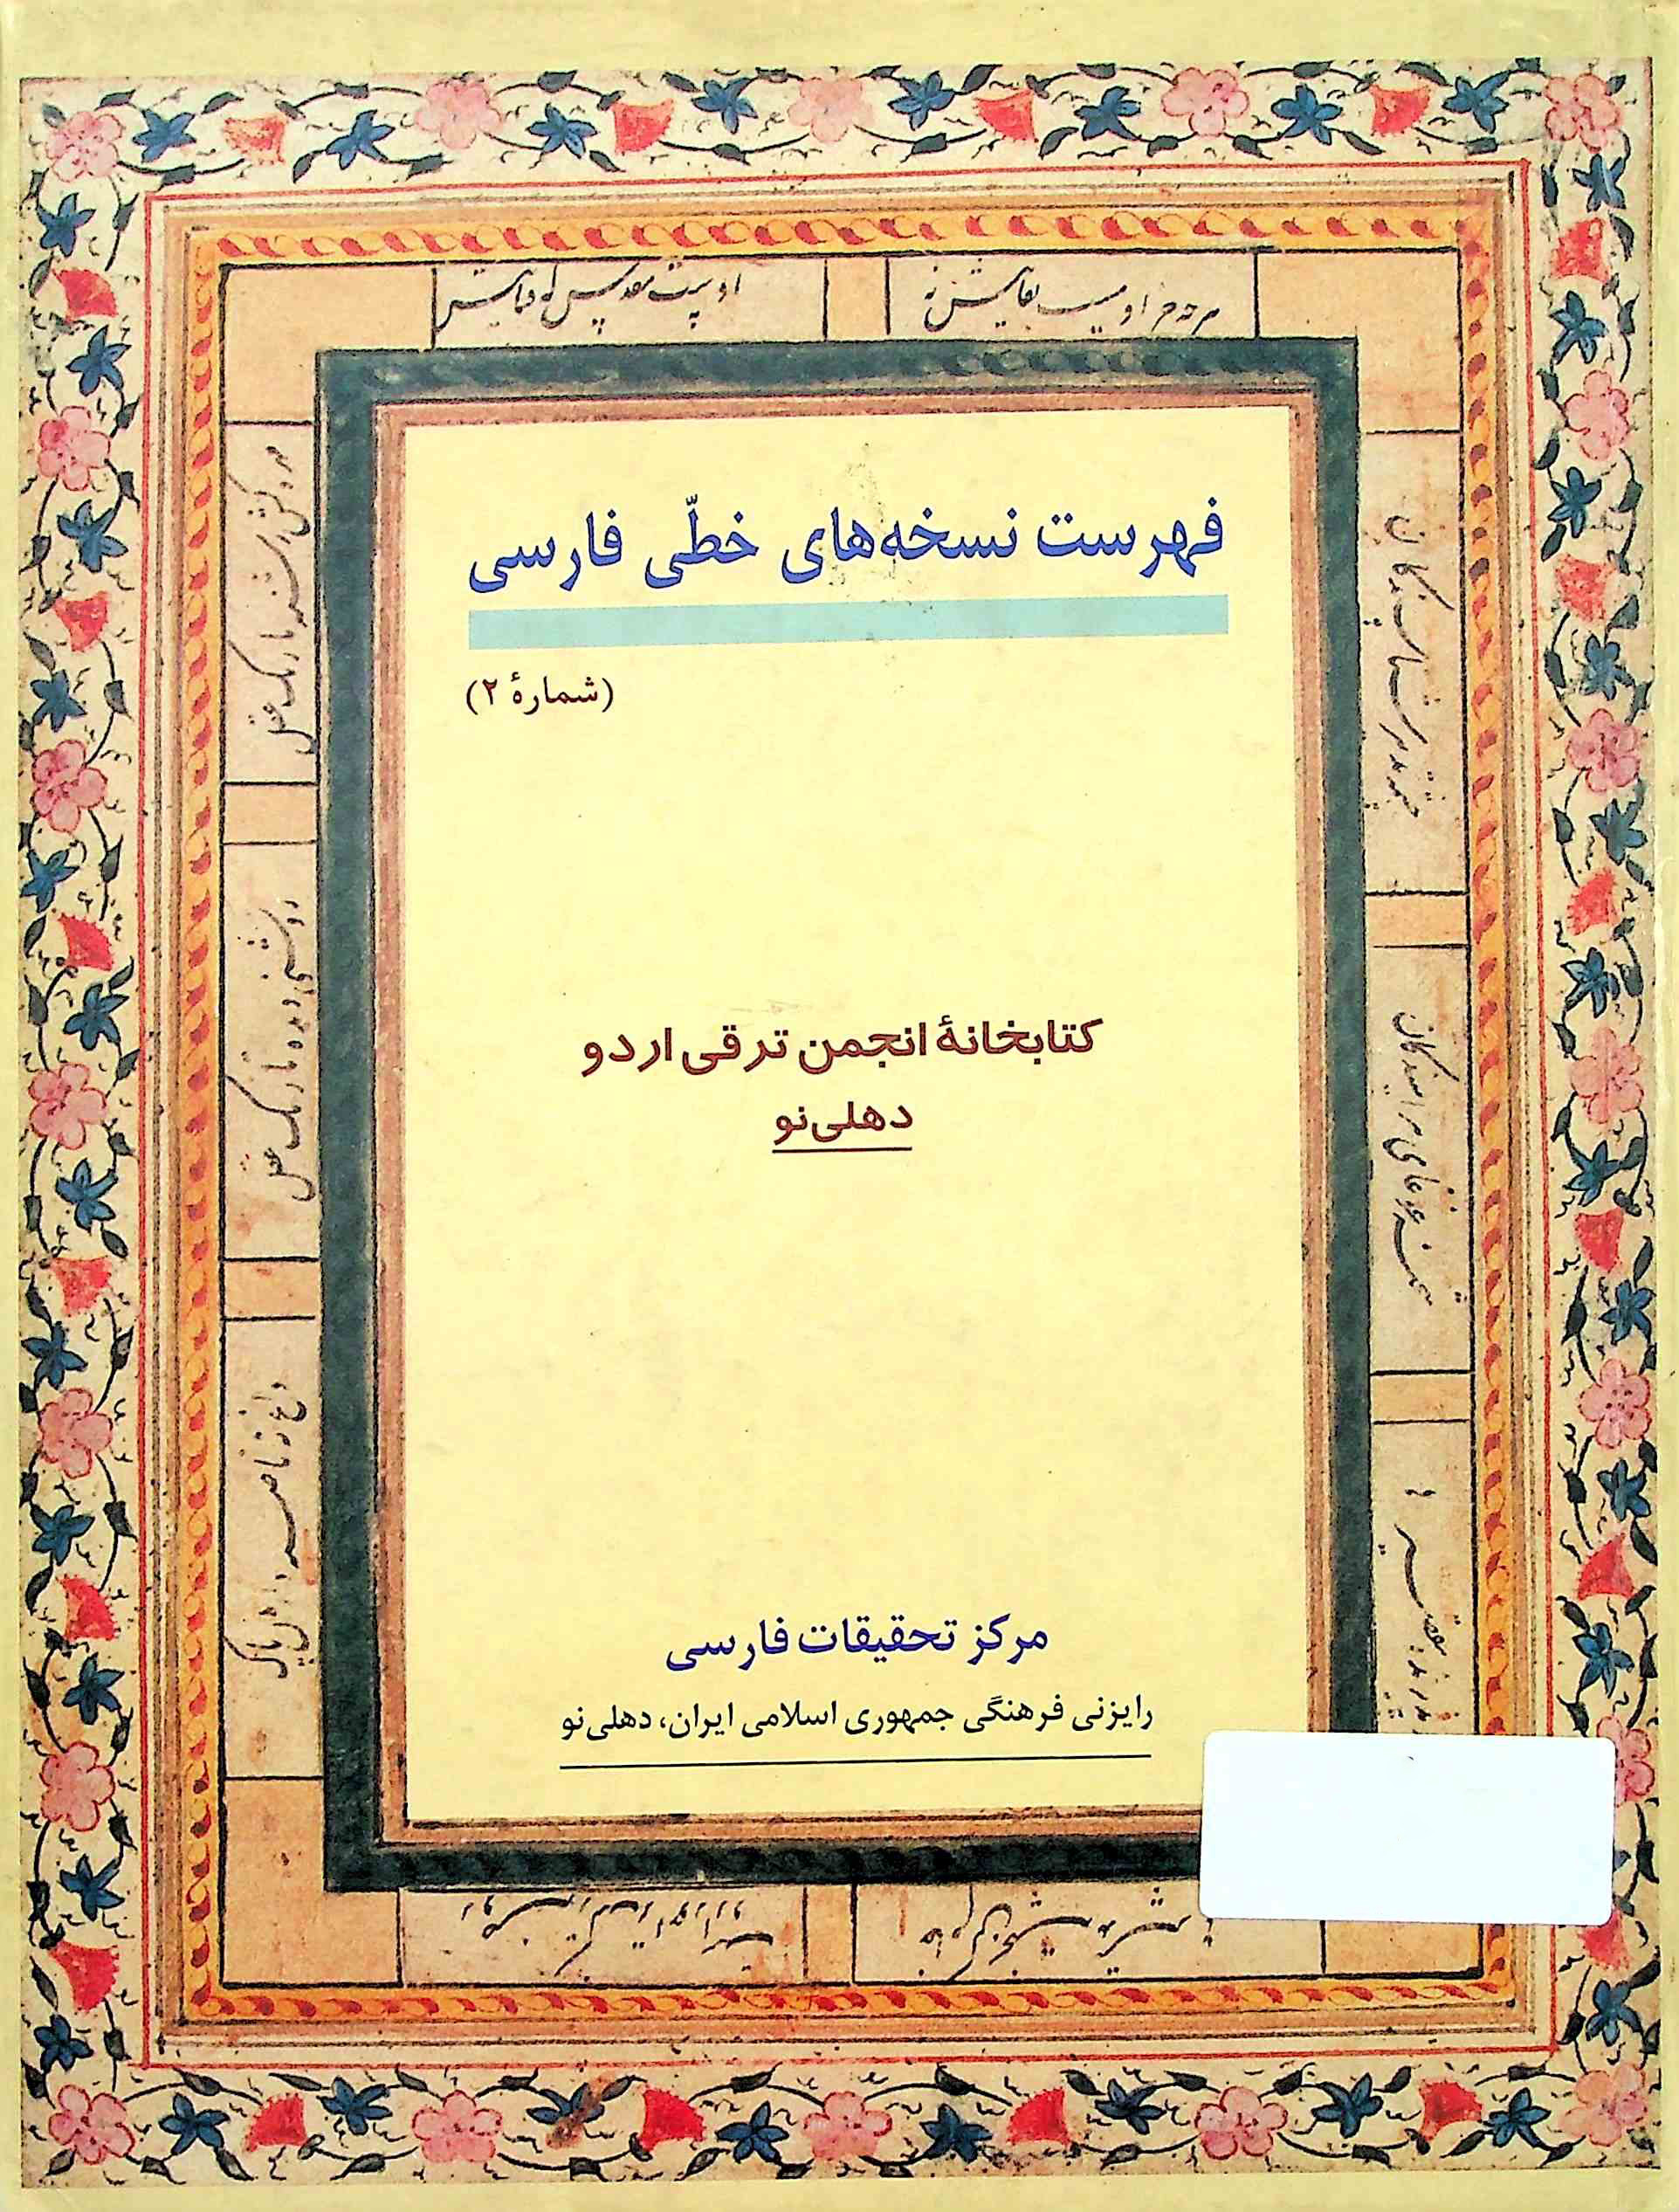 فہرست نسخہ ہائے خطی فارسی